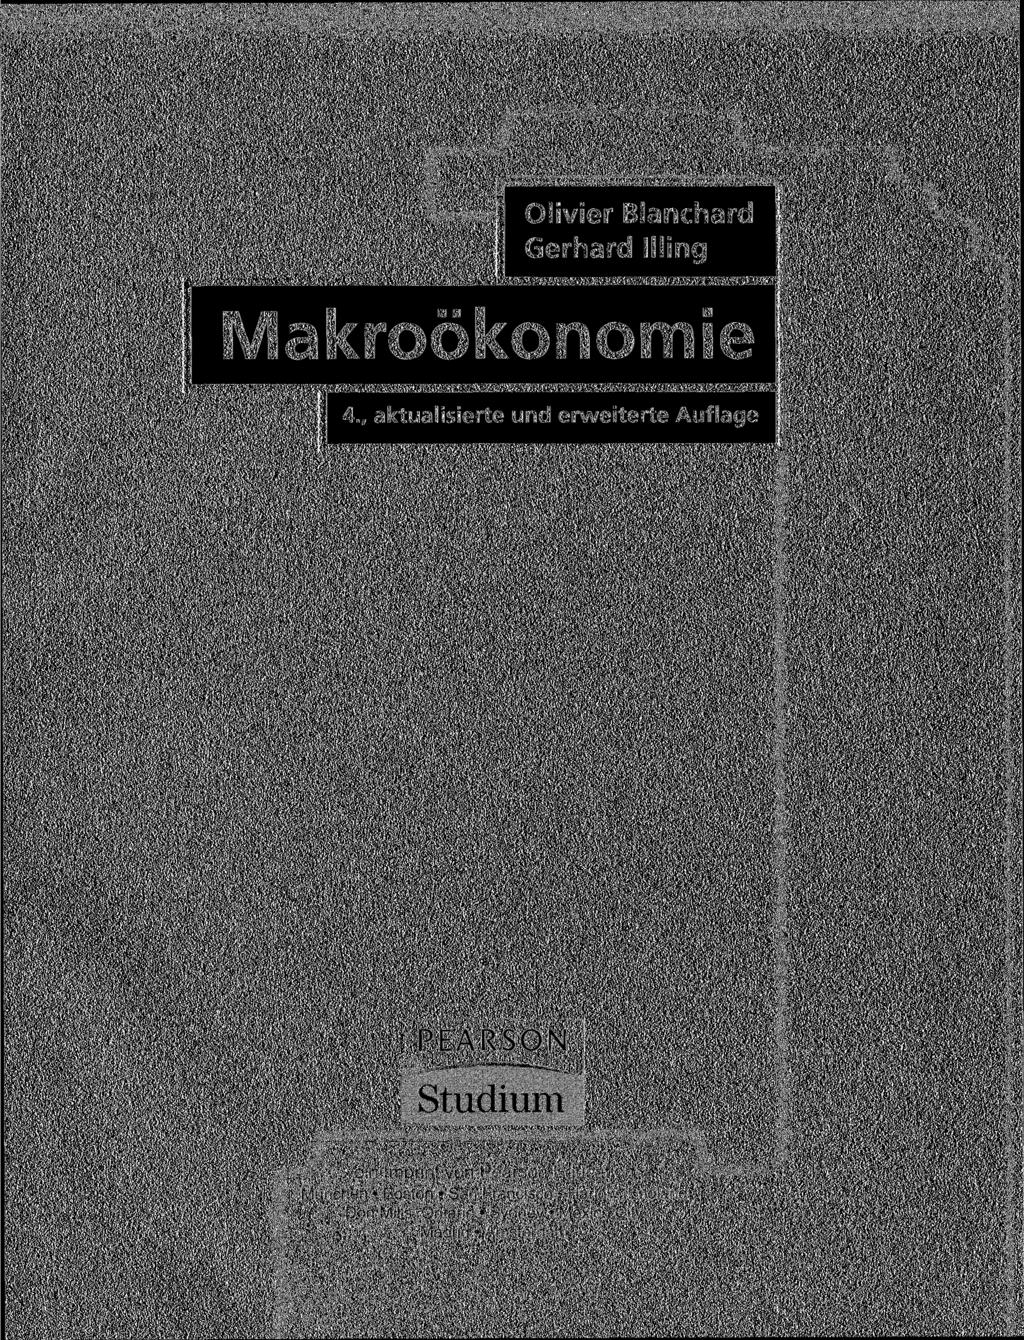 . Olivier Blanchard Gerhard Kling Makroökonomie 4., aktualisierte und erweiterte Auflage PEARSON ej.